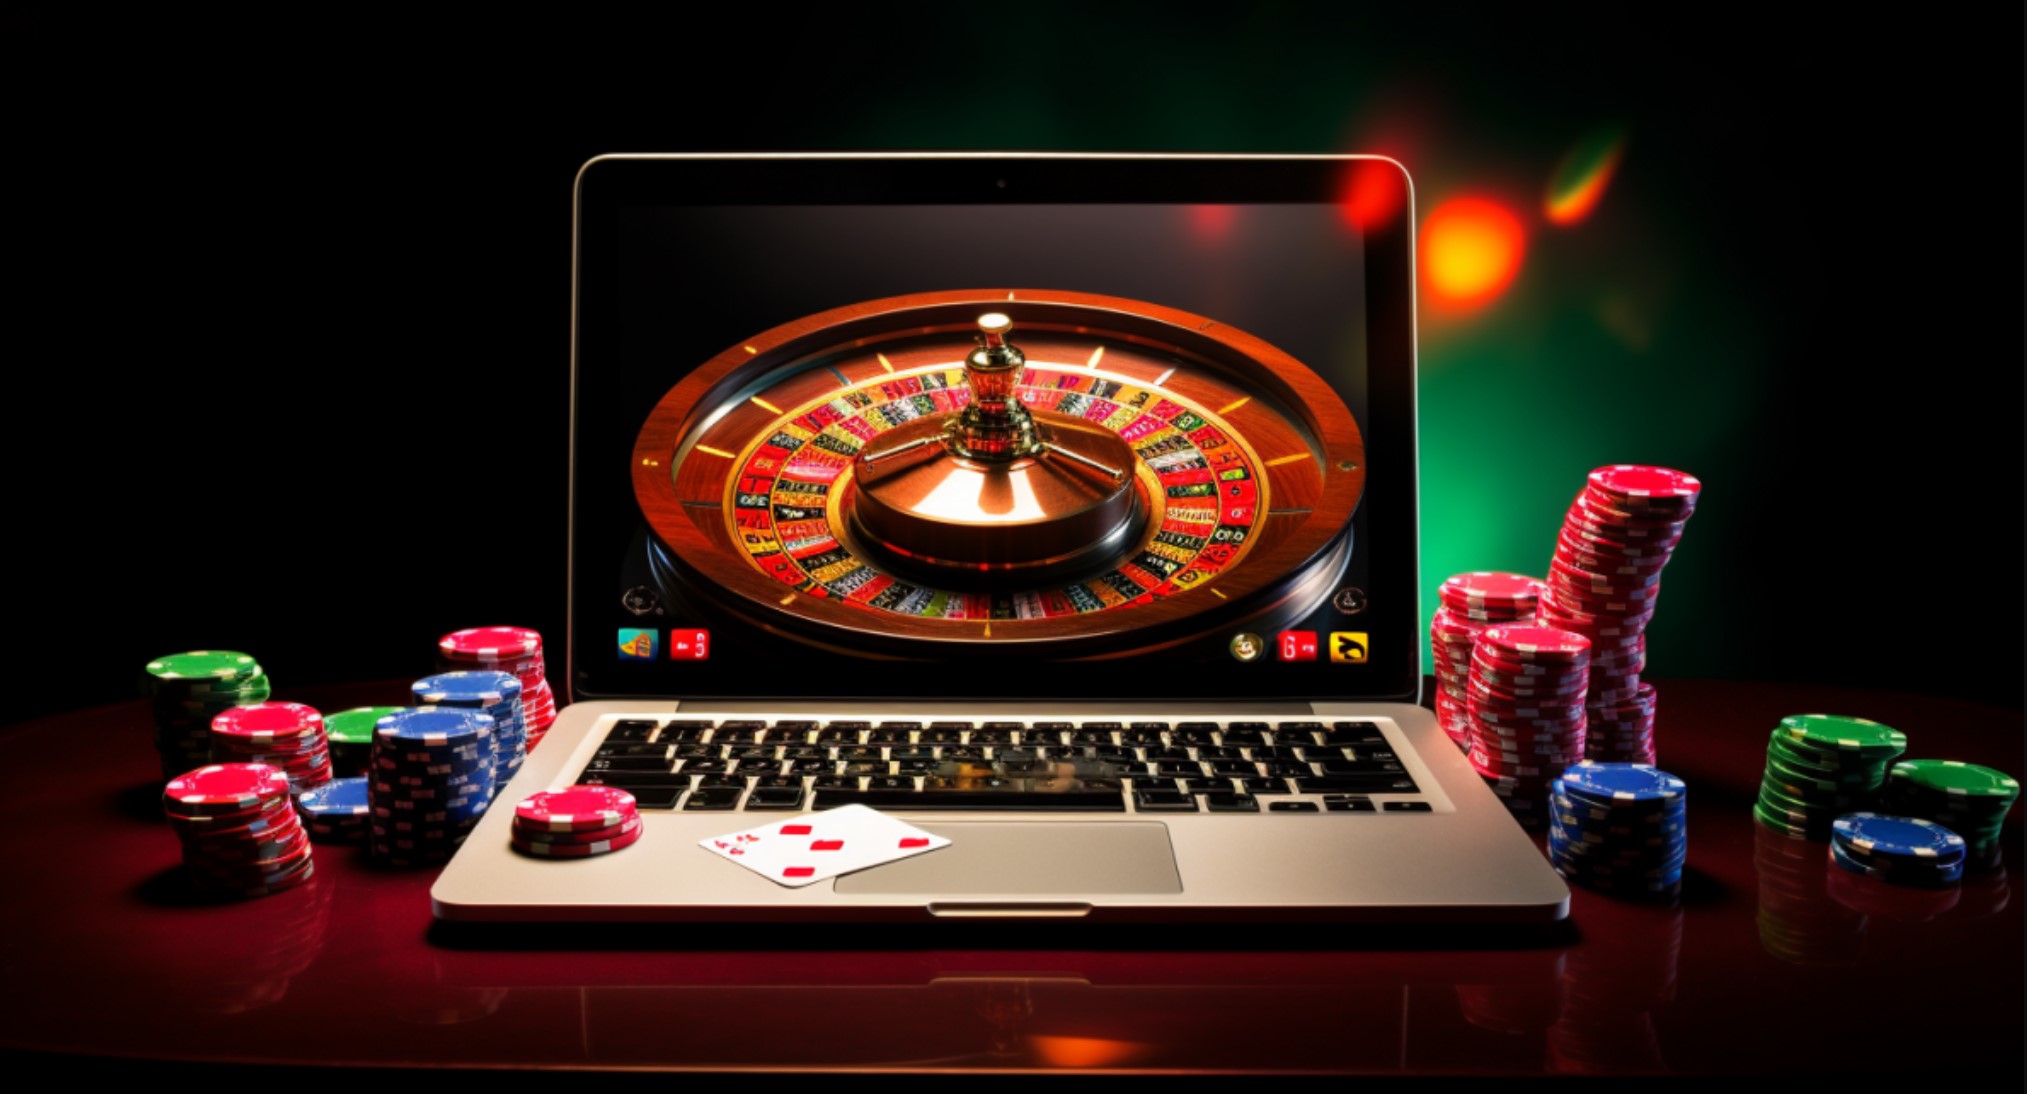 Anzeichen dafür, dass Sie einen großen Einfluss auf Online Casinos hatten